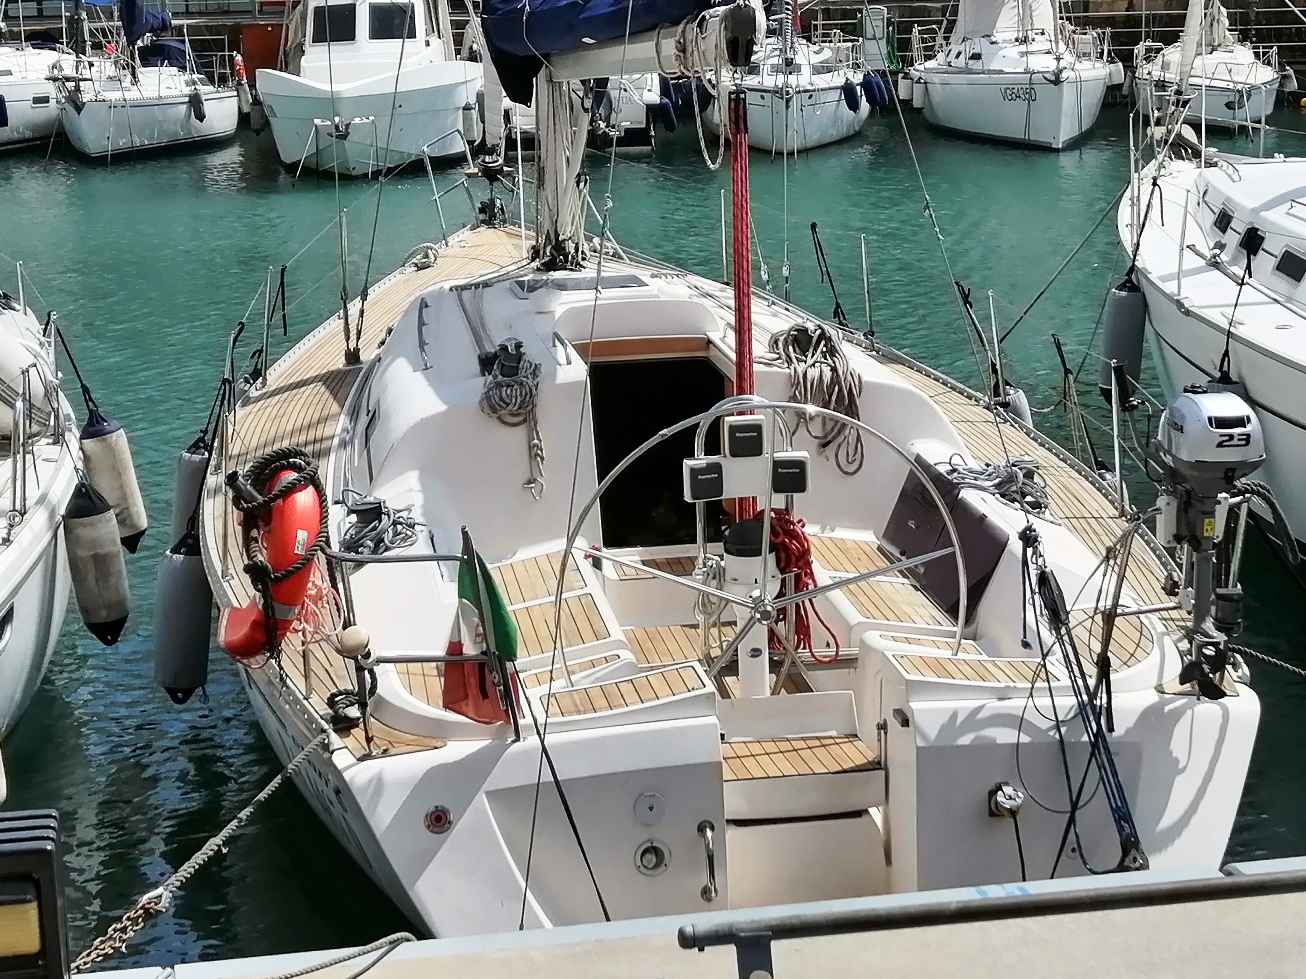 Elan 40 - Yacht Charter Genoa & Boat hire in Italy Italian Riviera Genova Marina di Porto Antico 1